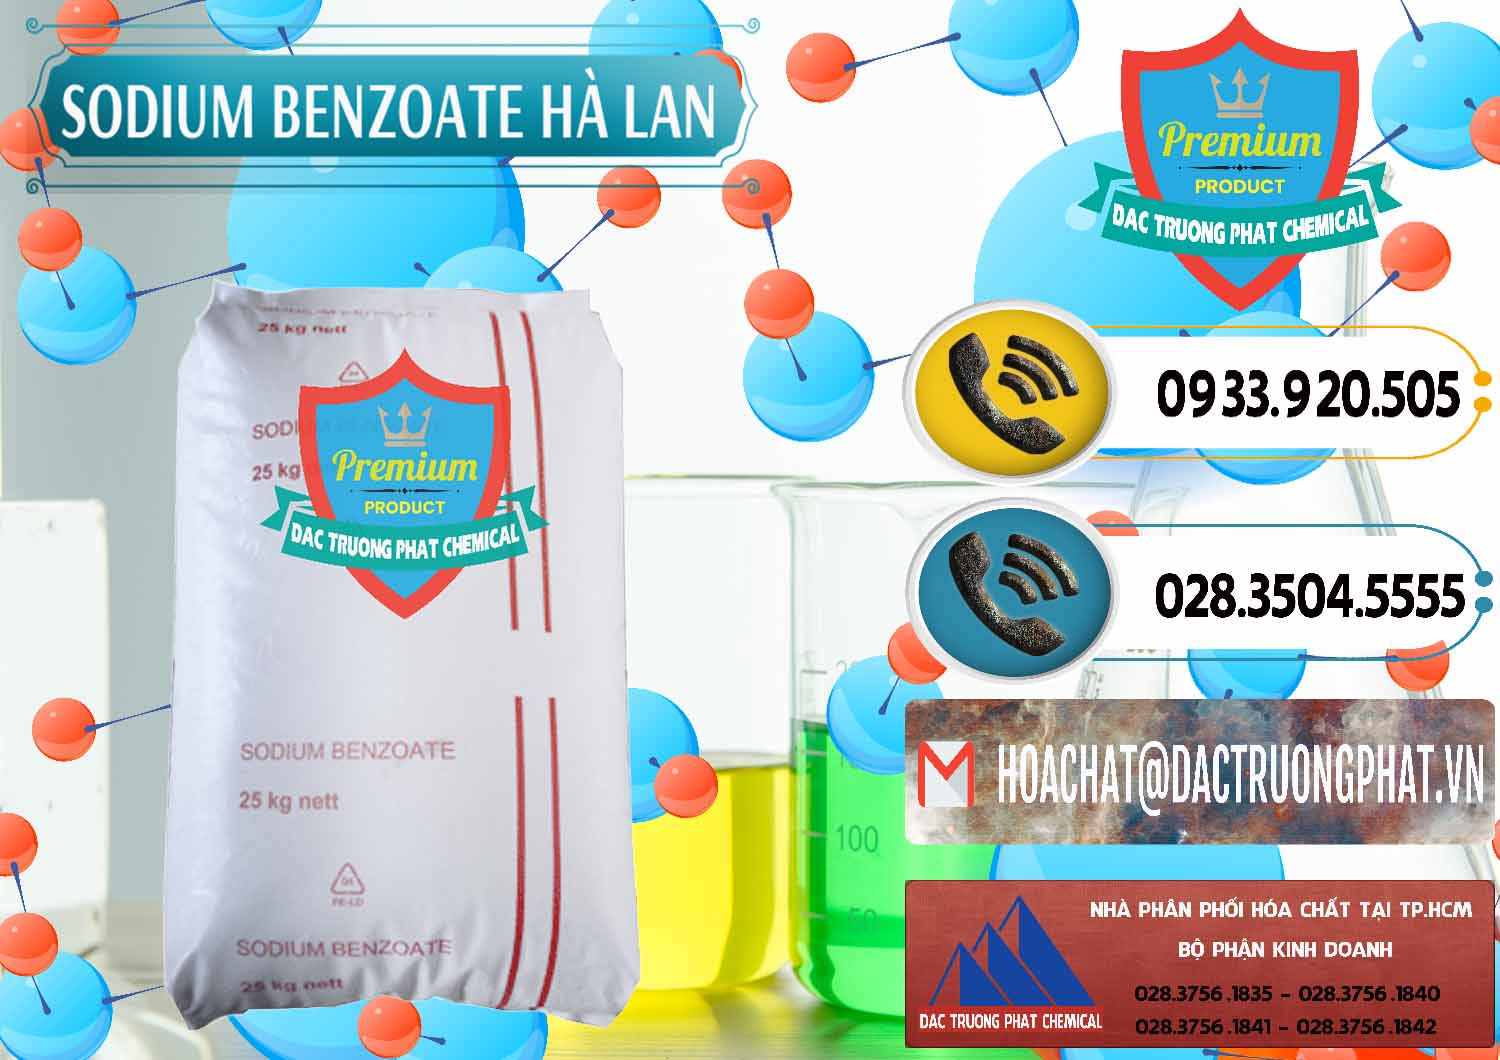 Cty kinh doanh - bán Sodium Benzoate - Mốc Bột Chữ Cam Hà Lan Netherlands - 0360 - Nhà nhập khẩu - phân phối hóa chất tại TP.HCM - hoachatdetnhuom.vn